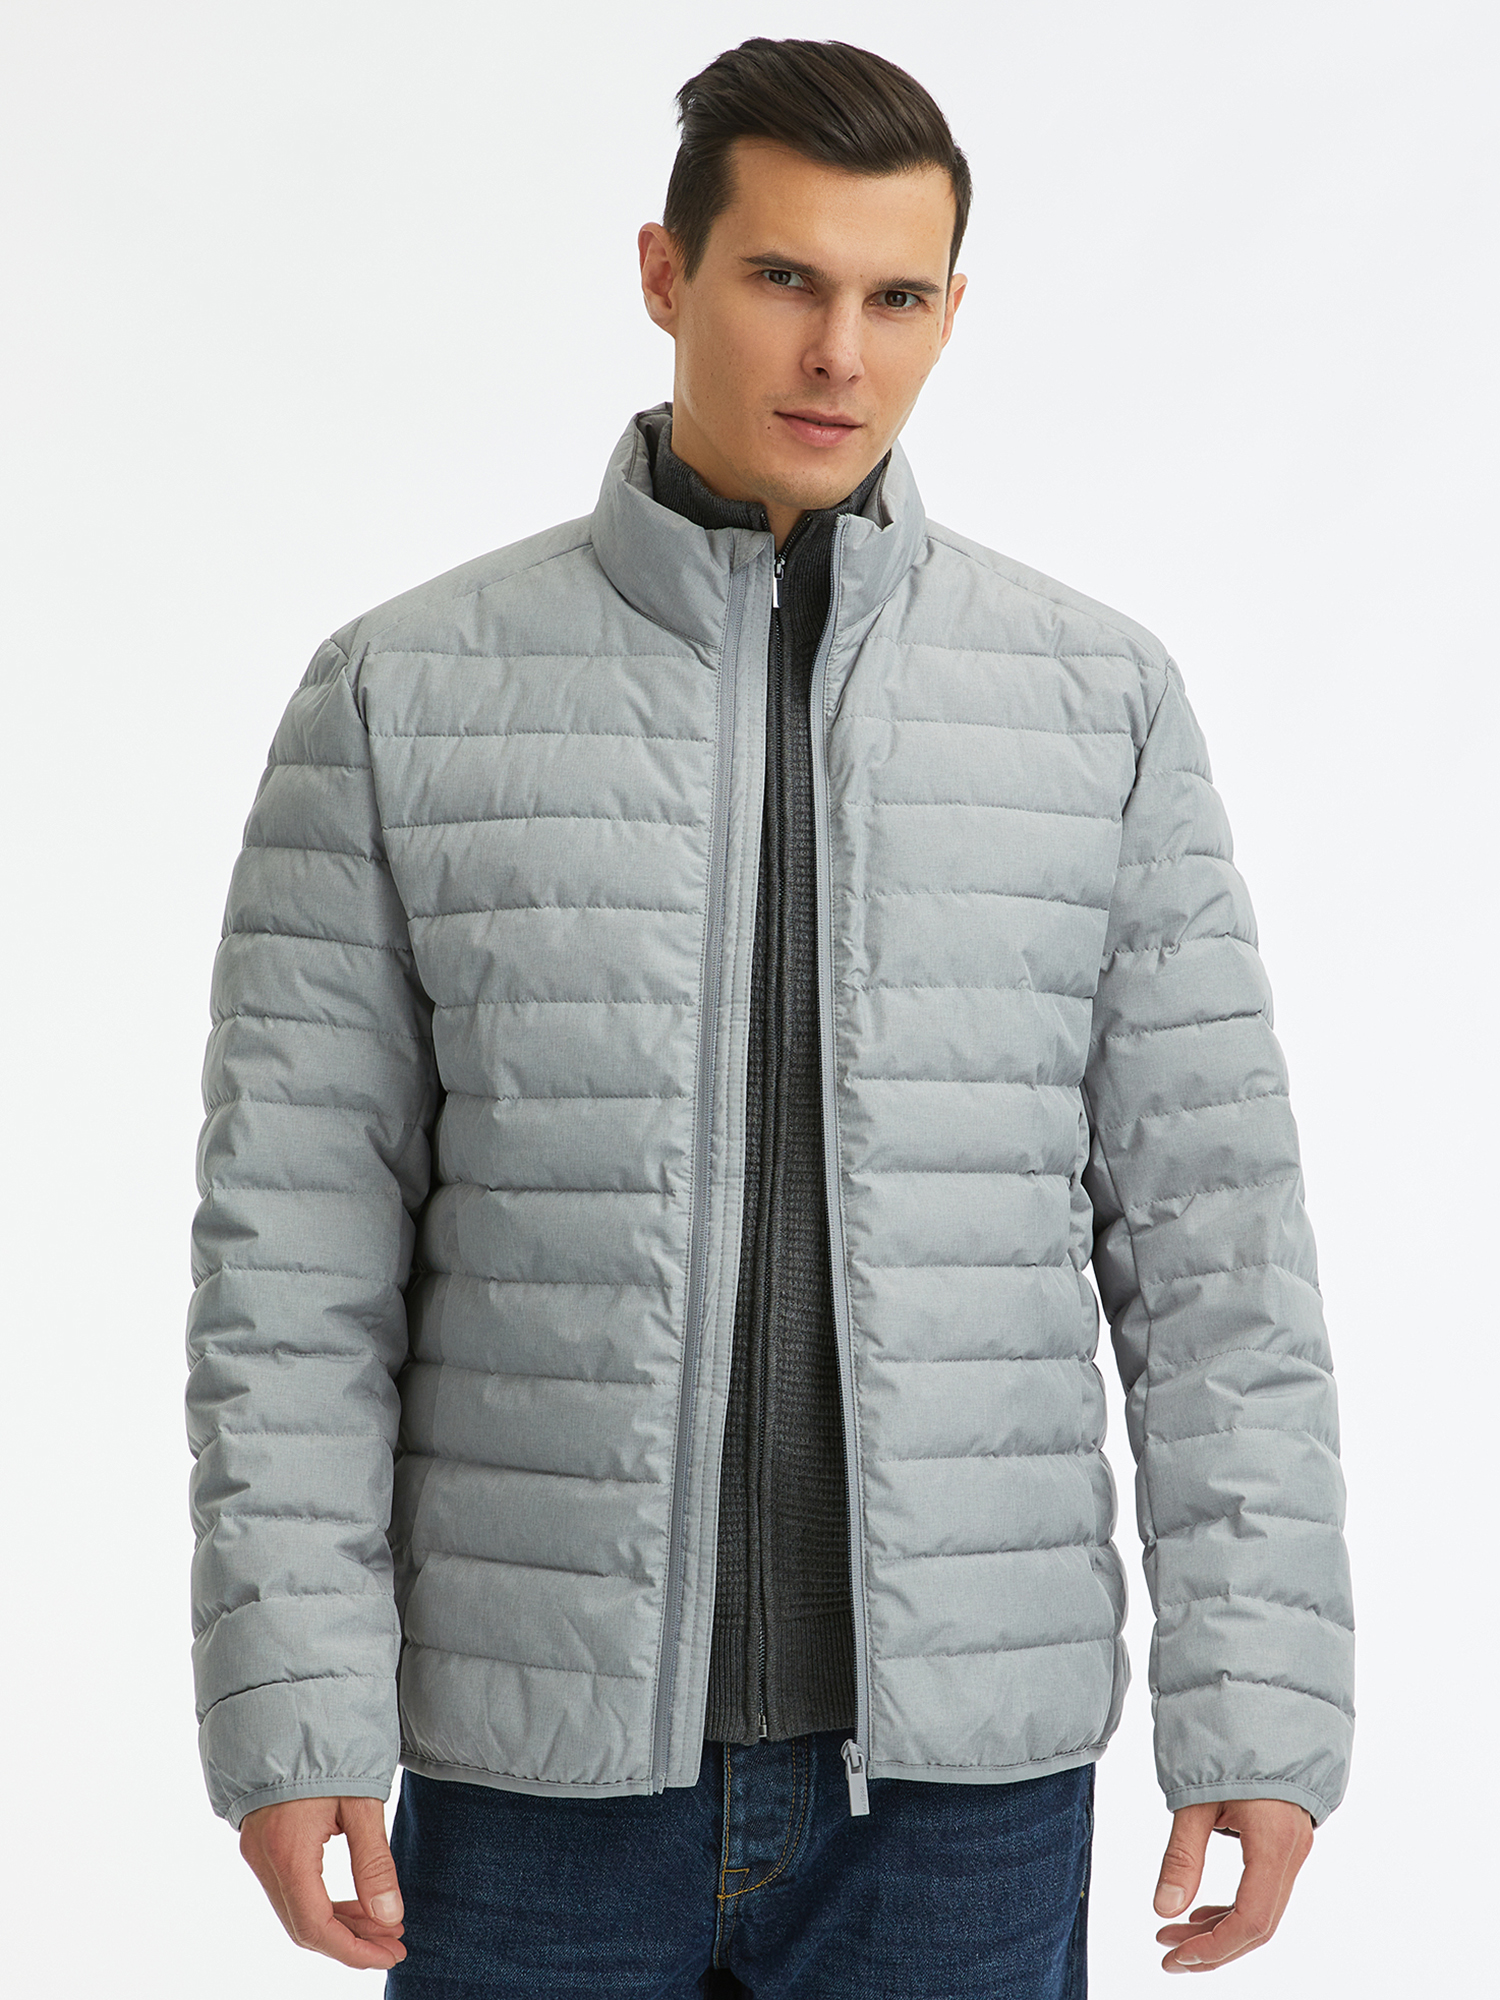 Куртка мужская oodji 1B121002M-1 серая XL - купить в Москве, цены на Мегамаркет | 100067047571